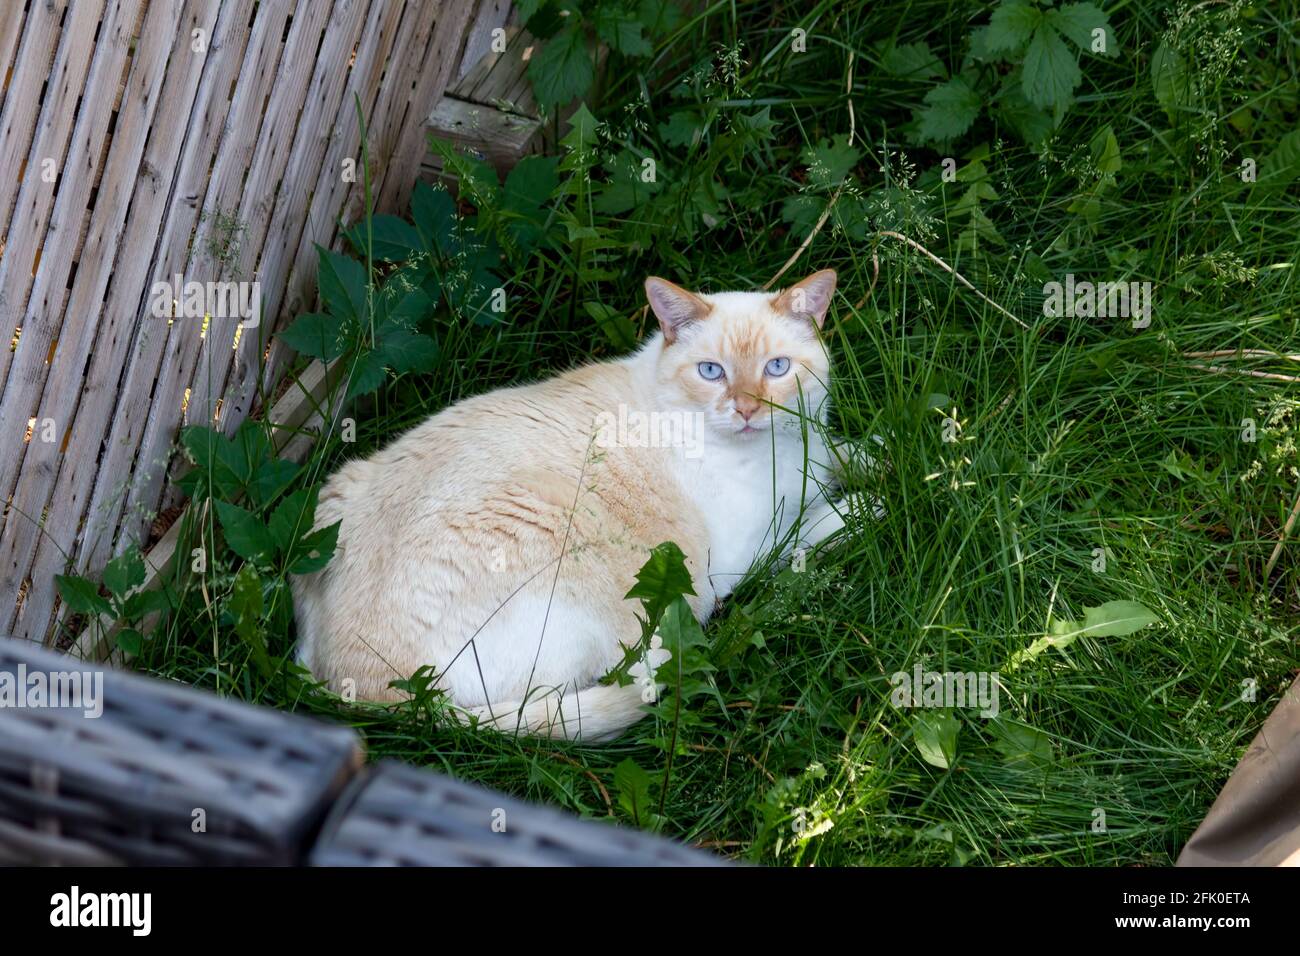 Un chat de couleur claire avec des yeux bleu vif se prélassant herbe et revendiquant la cour d'un voisin comme sa propre Banque D'Images